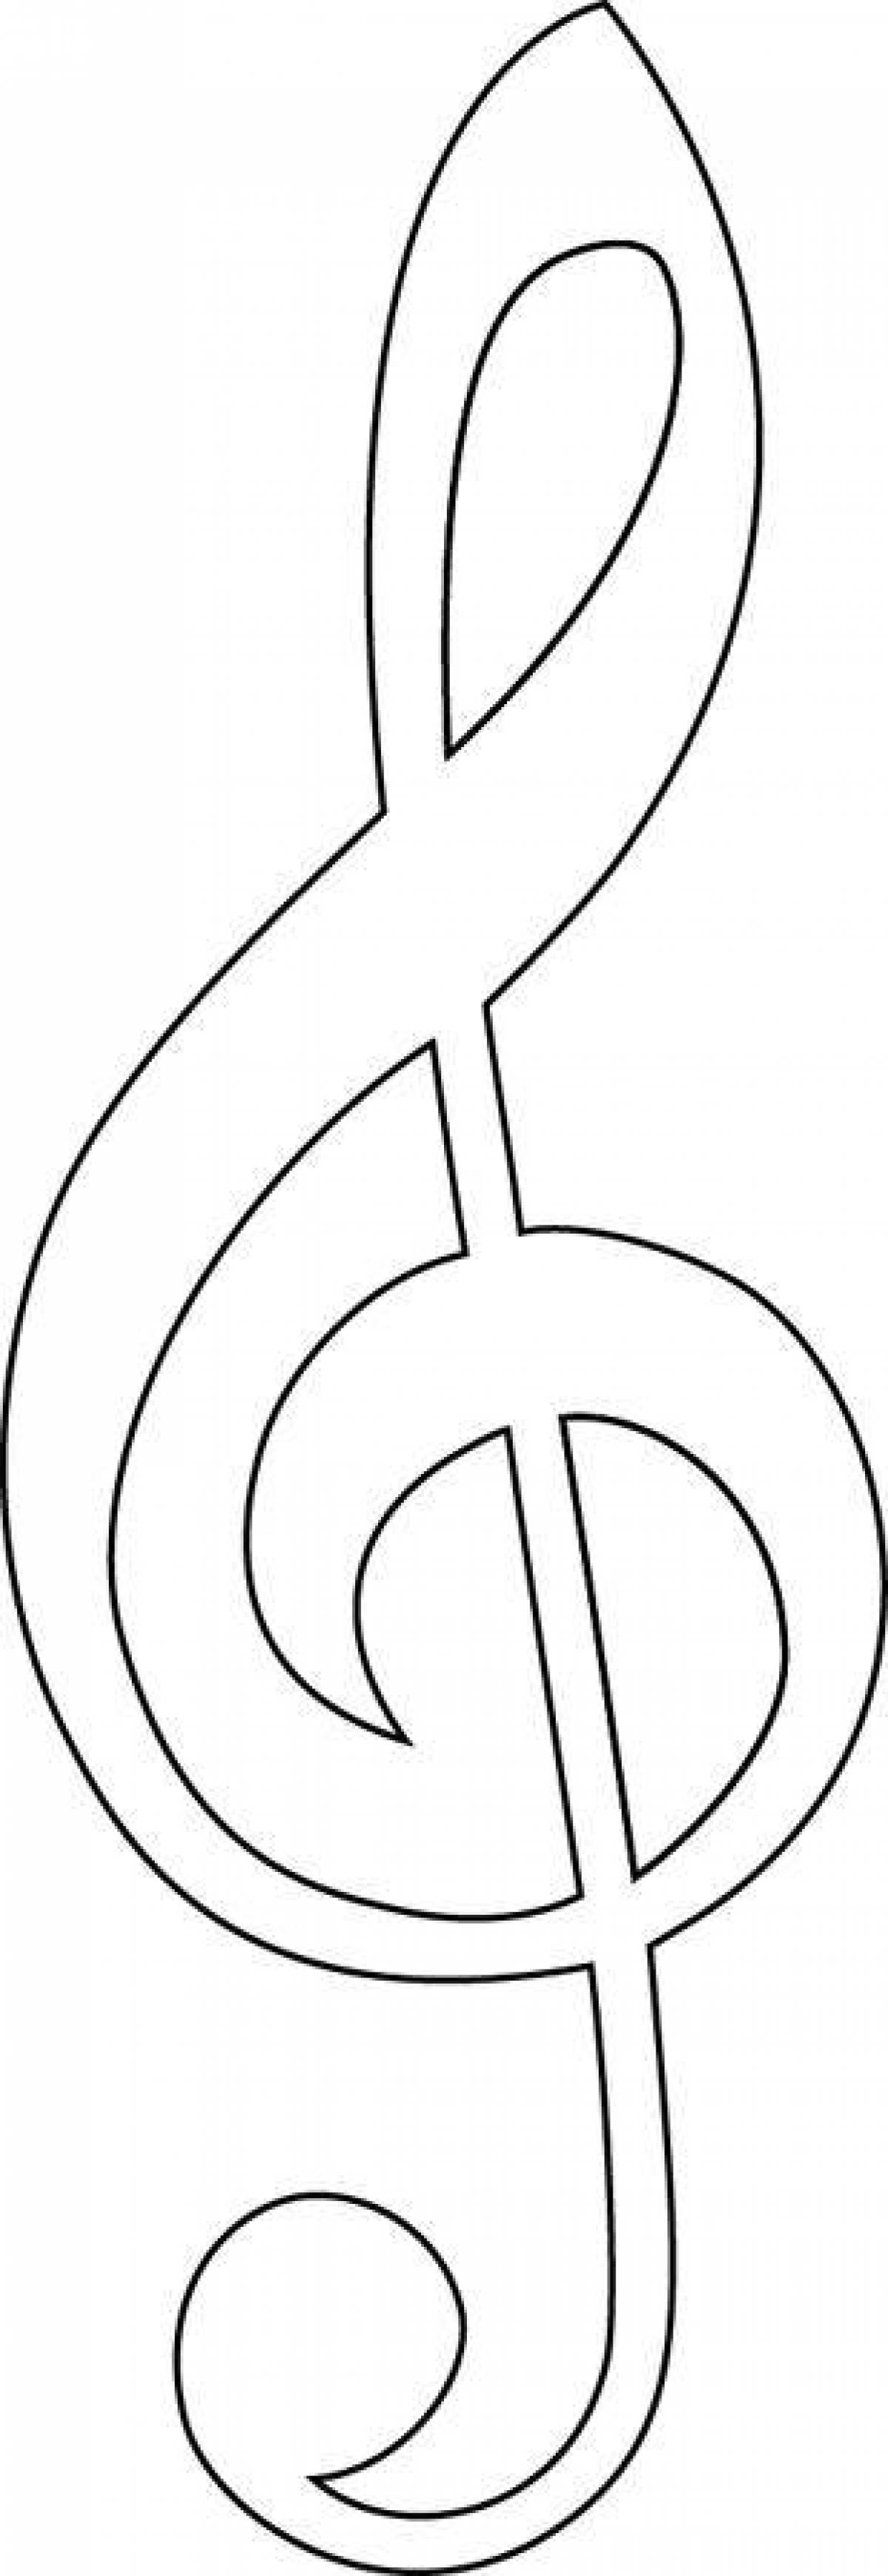 Трафарет скрипичного ключа для вырезания из бумаги